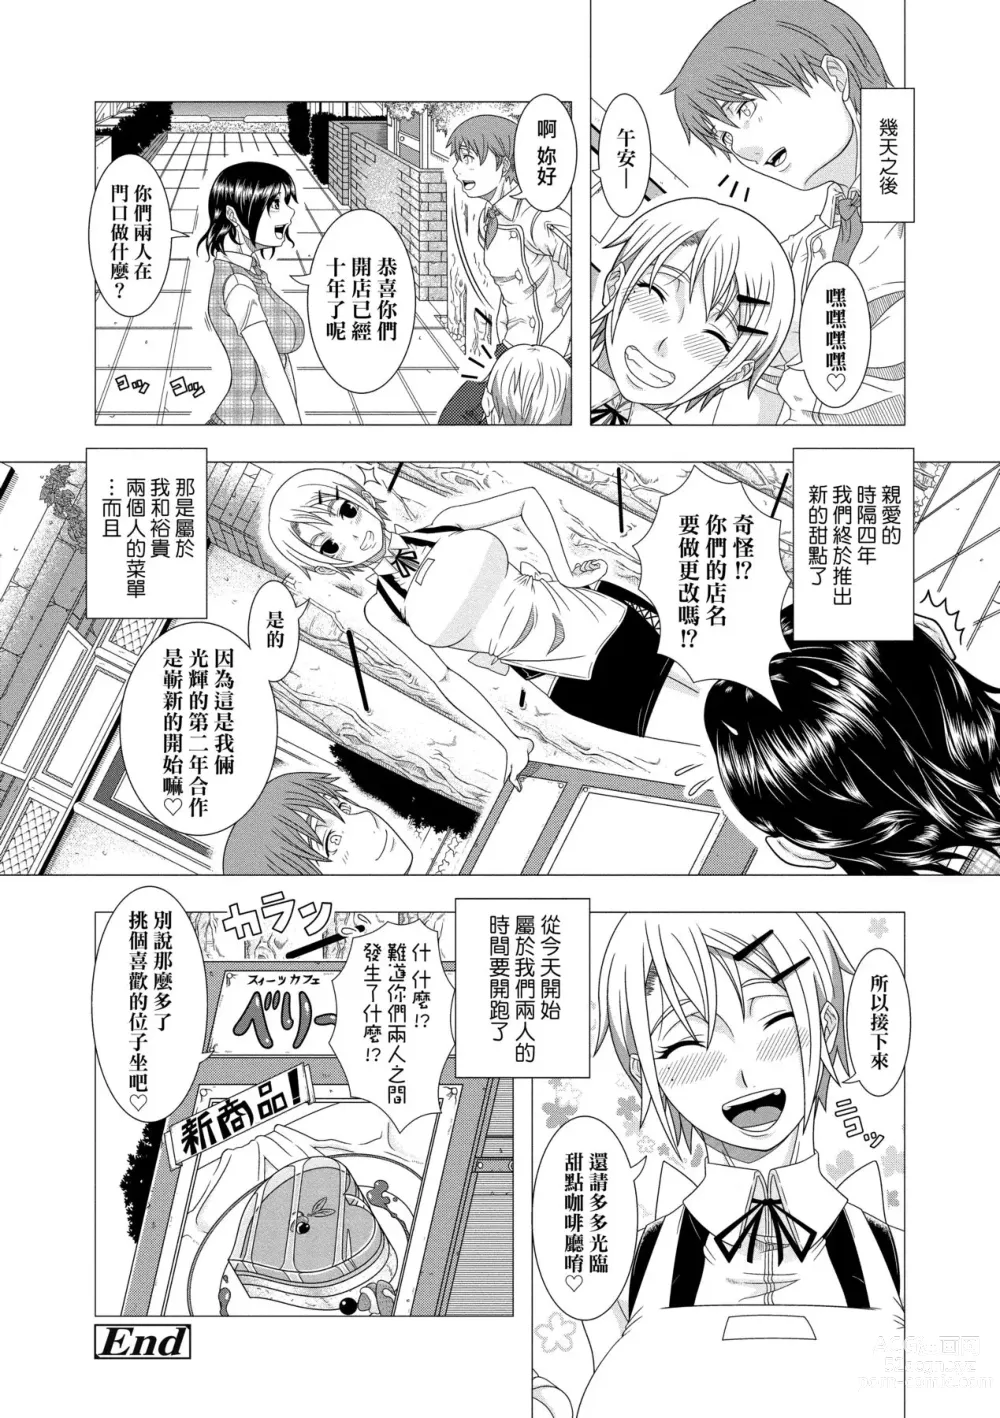 Page 208 of manga Hitozuma Life (decensored)